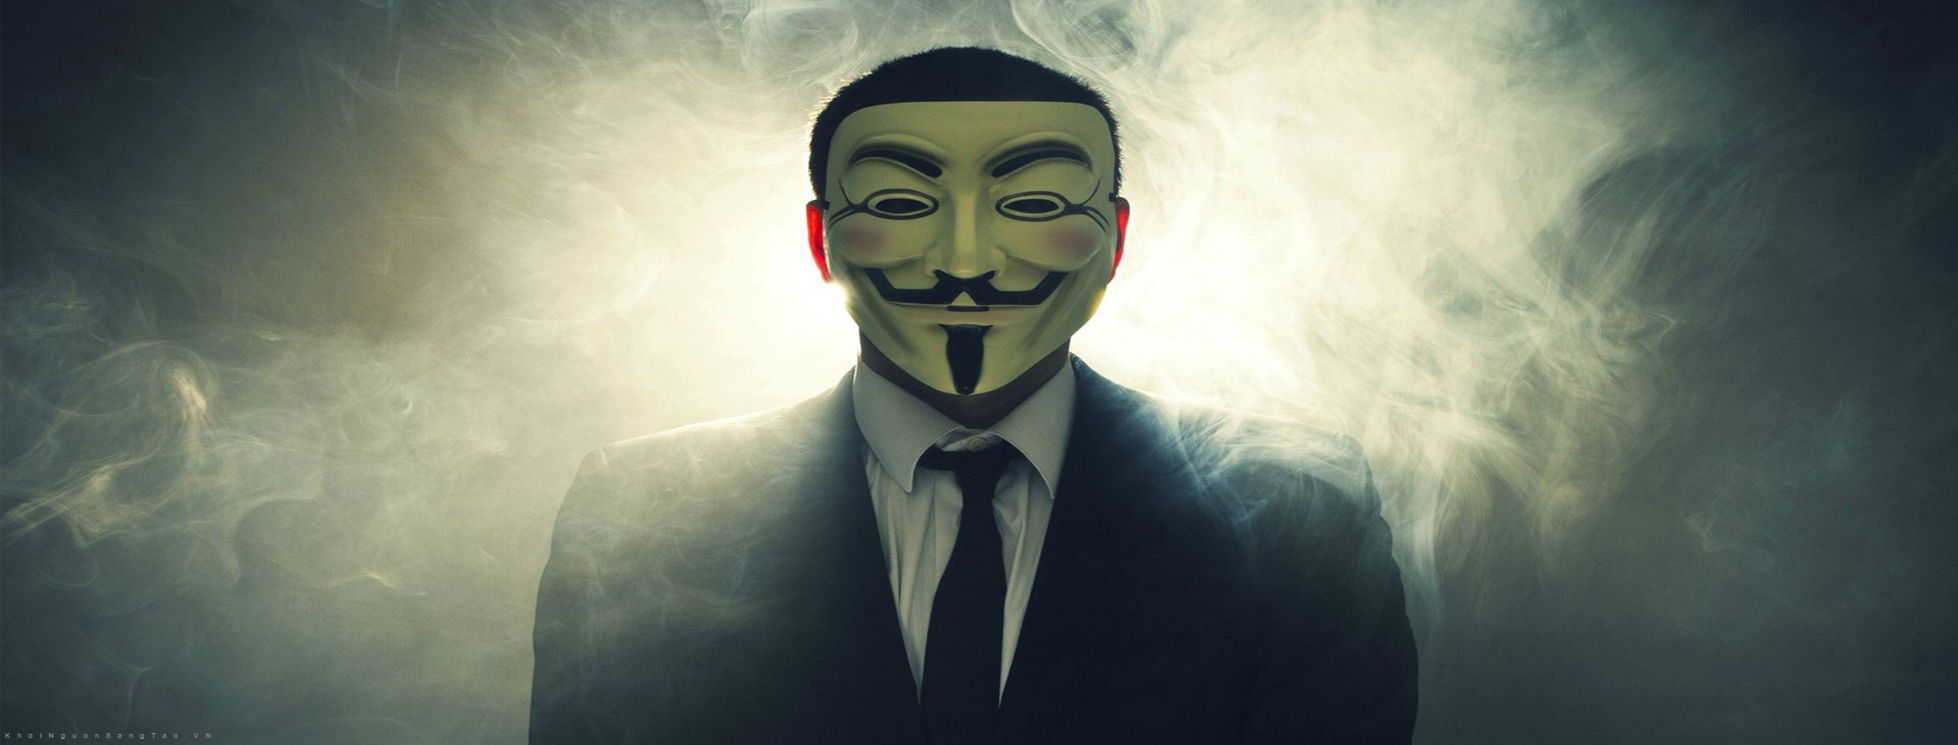 Ảnh Hacker Anonymous Đẹp Ngầu Chất Cực Kỳ Bí Ẩn